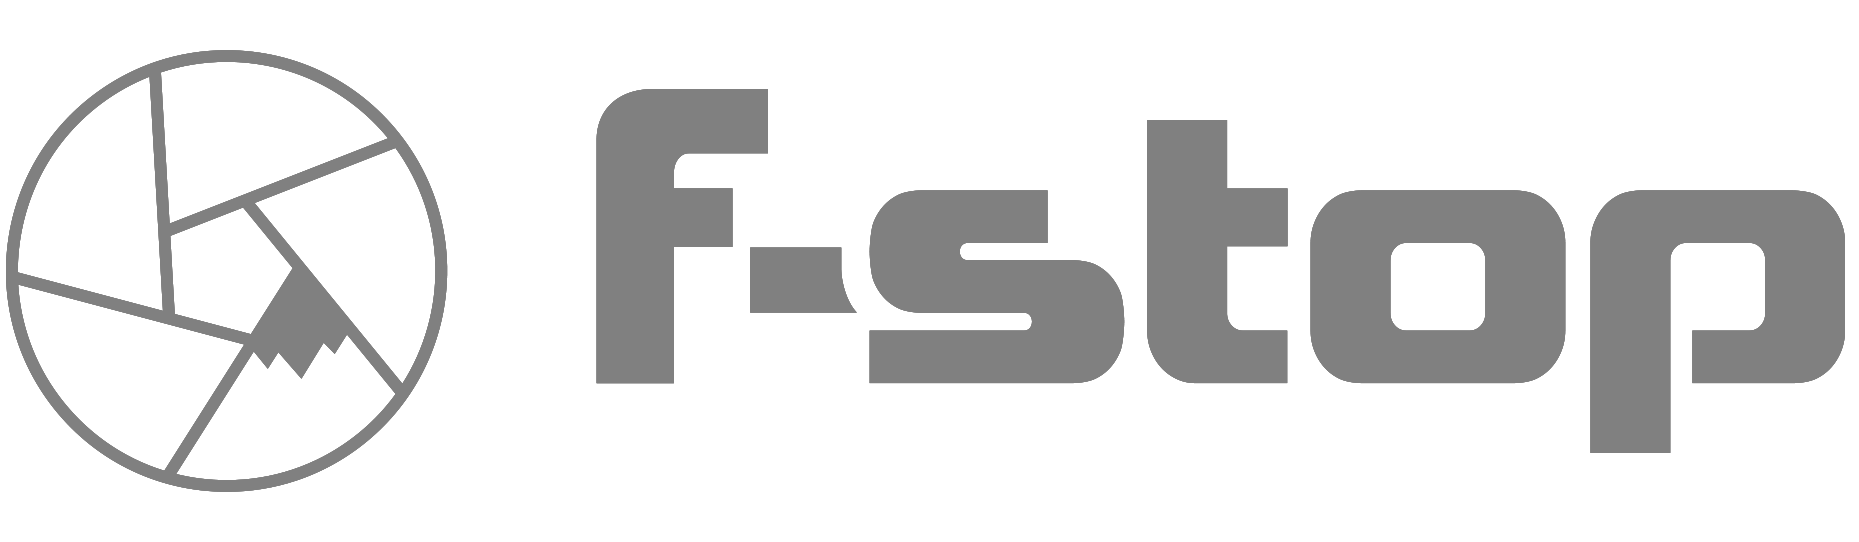 f-stop logo ssop partner.png